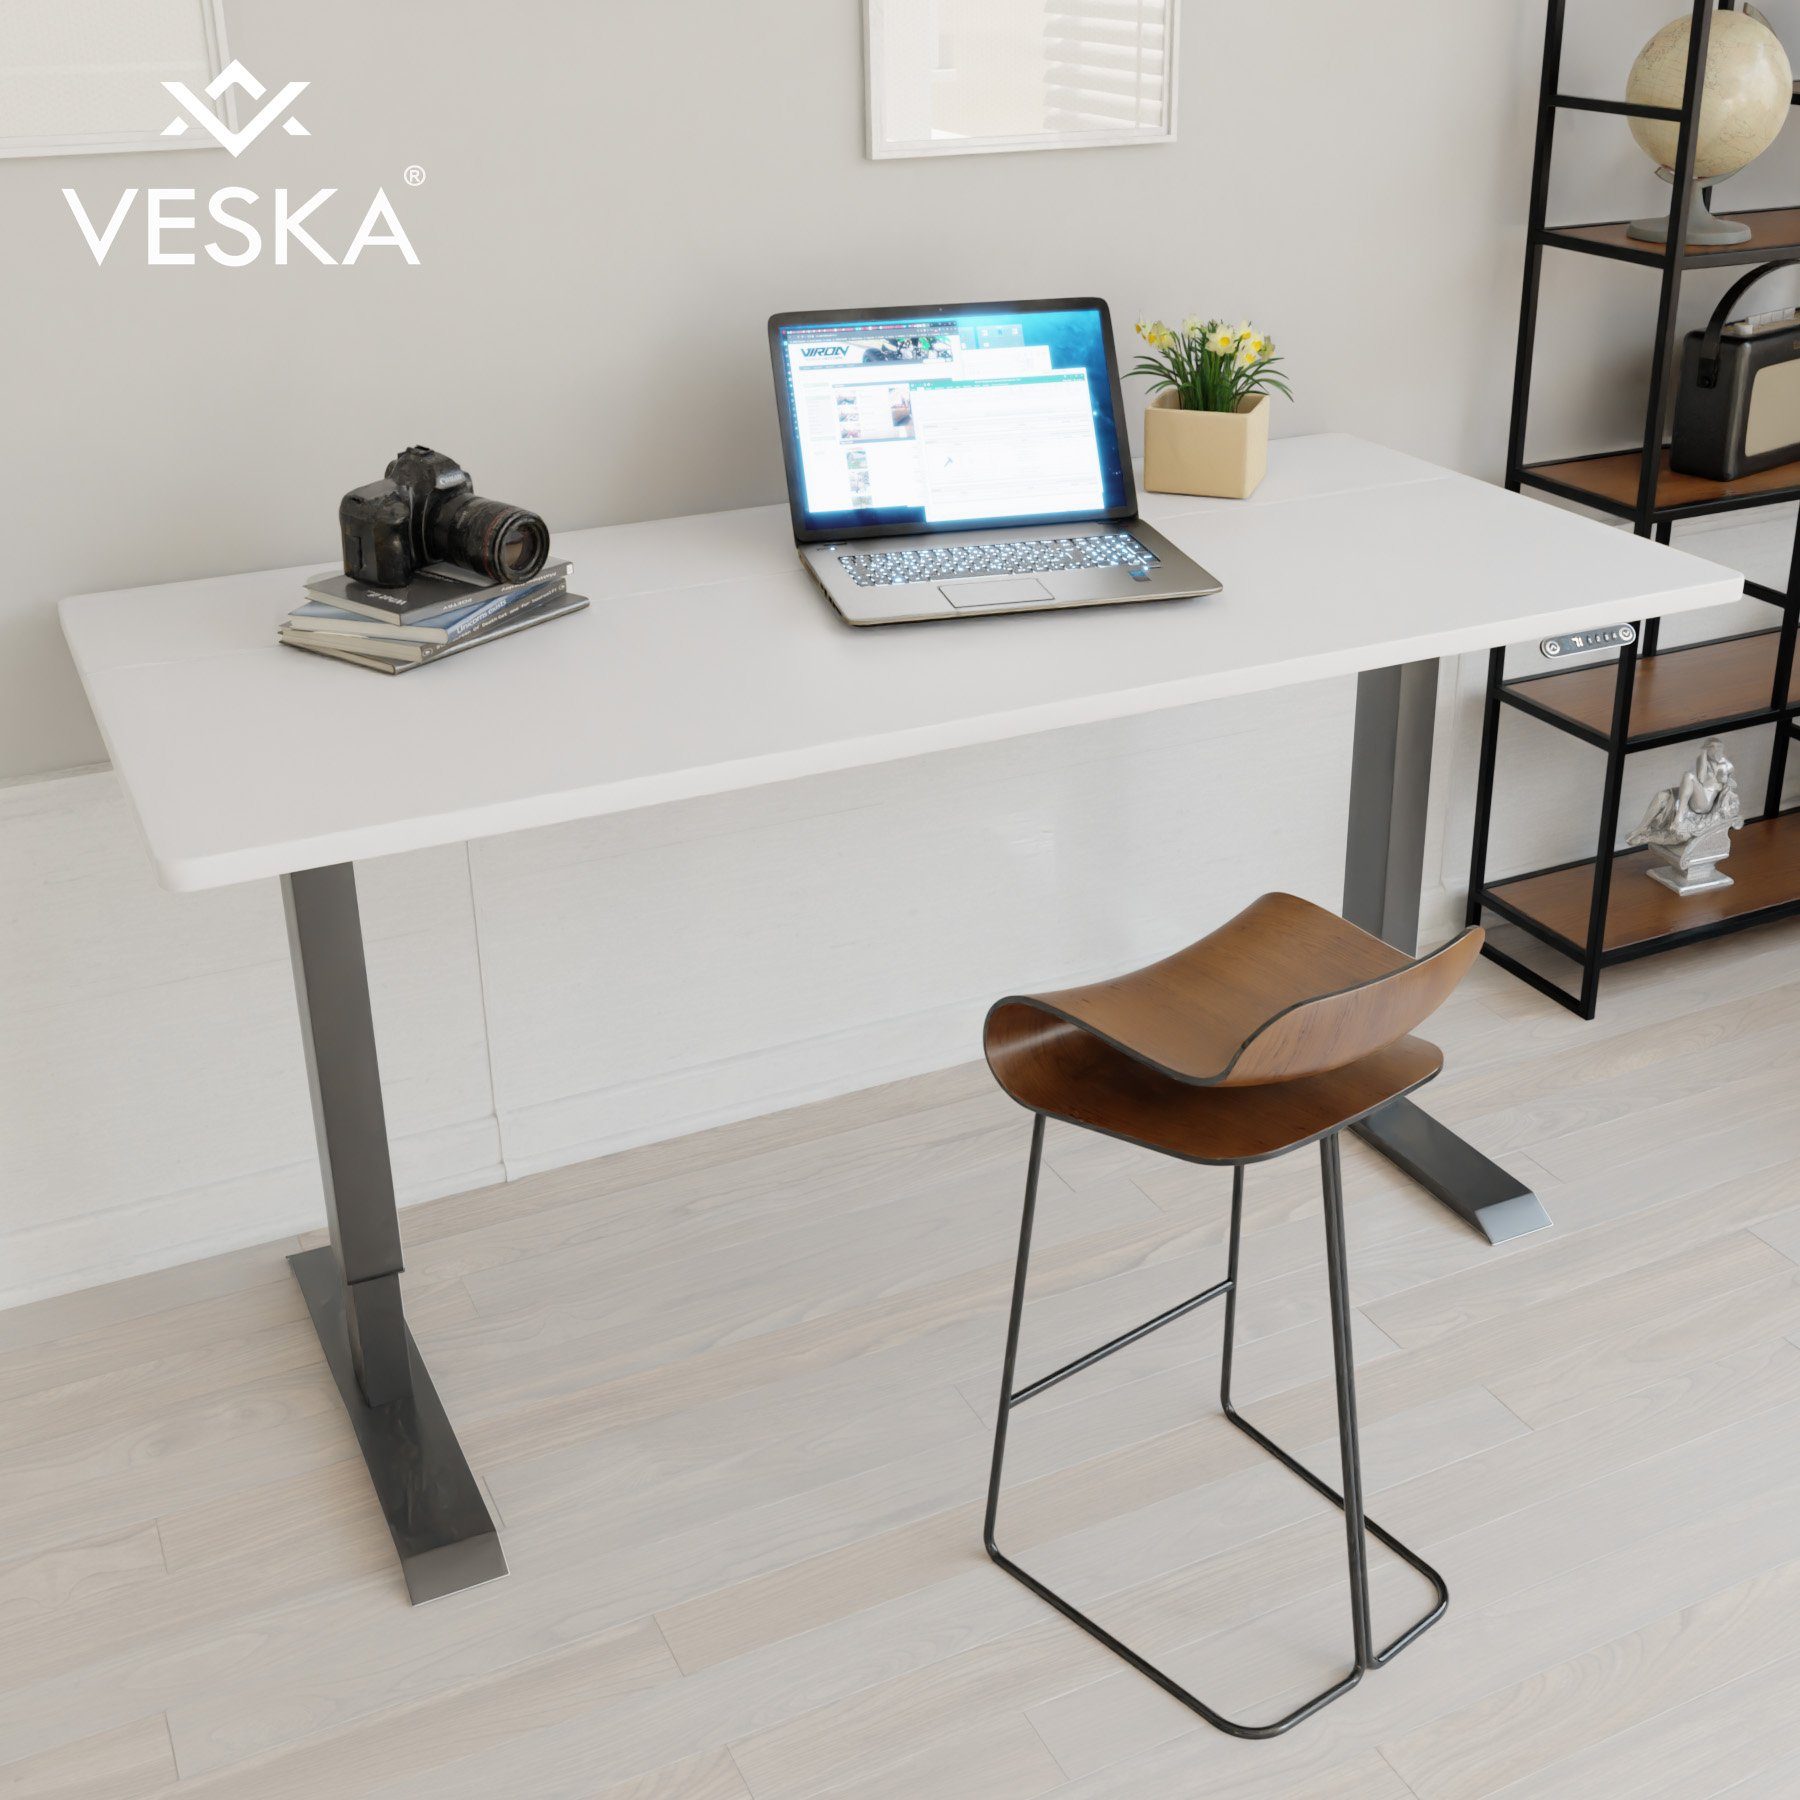 VESKA Schreibtisch Höhenverstellbar 140 x 70 cm - Bürotisch Elektrisch mit Touchscreen - Sitz- & Stehpult Home Office